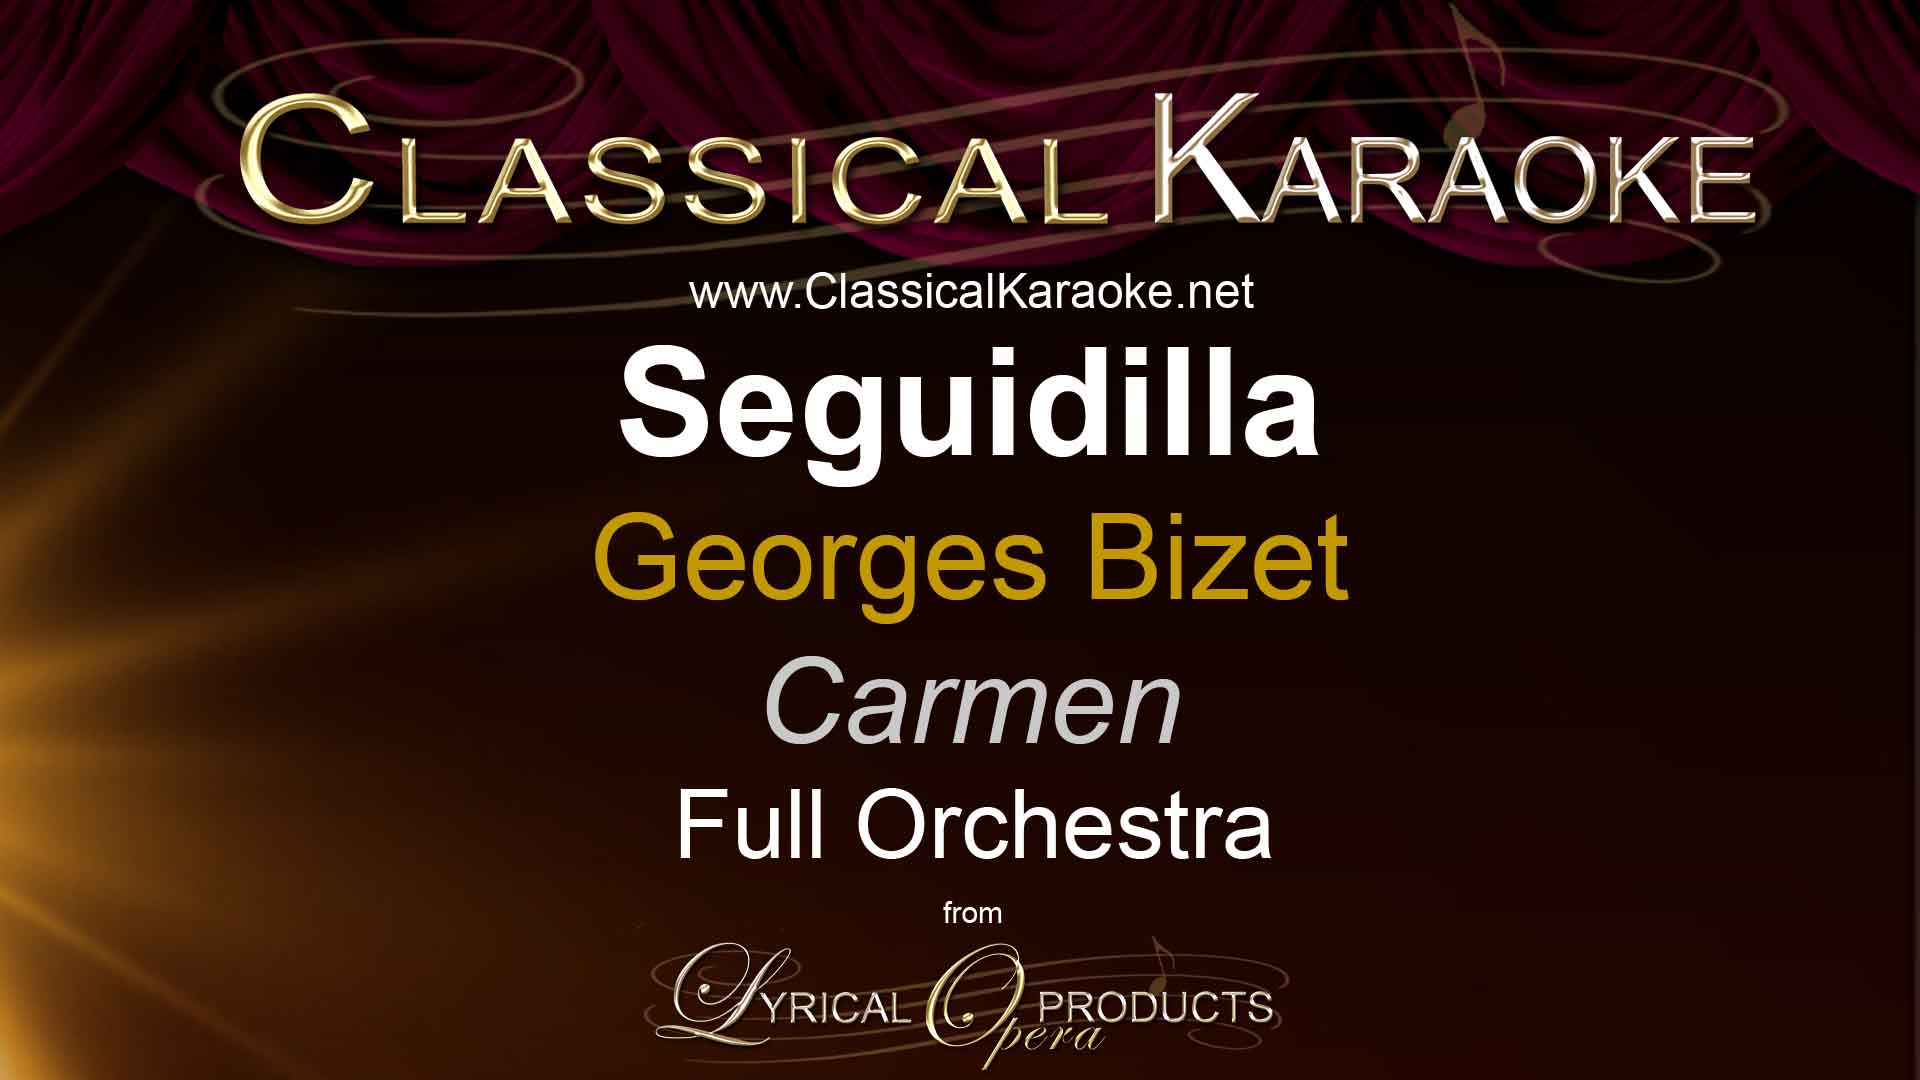 Seguidilla, from Carmen, Full Orchestral Accompaniment (karaoke) track